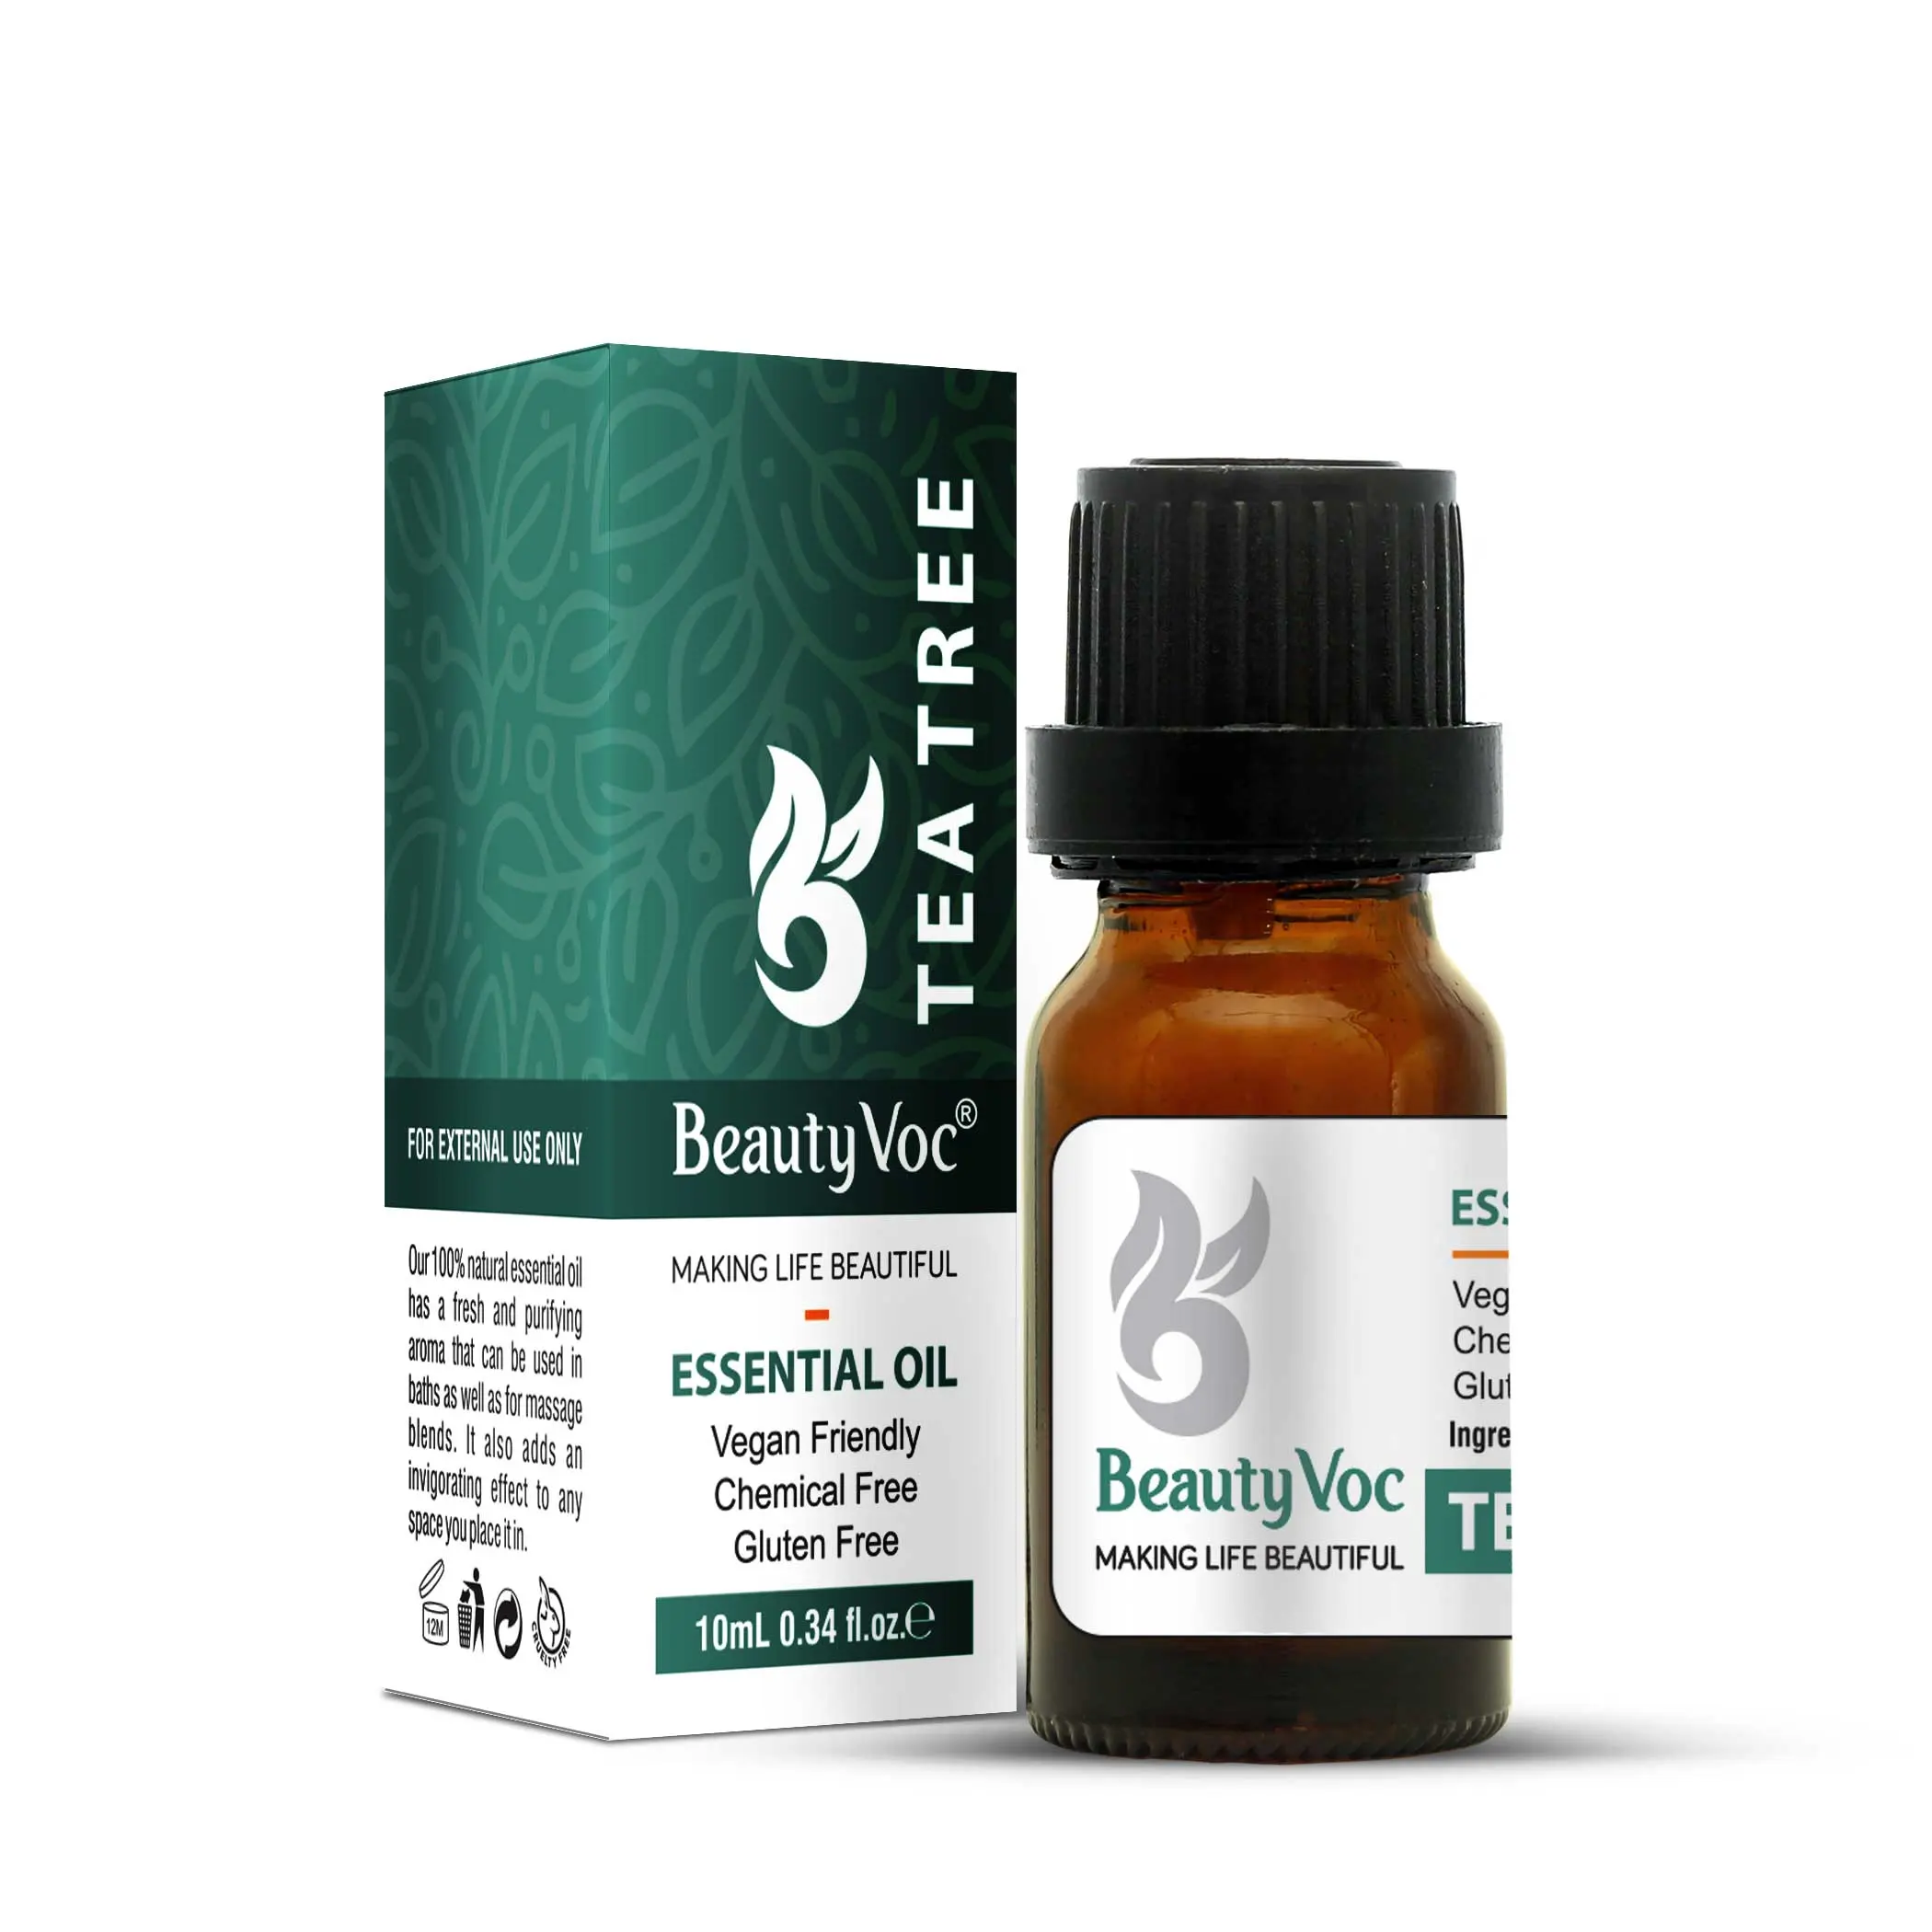 Abraza los poderes curativos naturales del aceite esencial de árbol de té de Beauty Voc con sus propiedades purificantes y calmantes